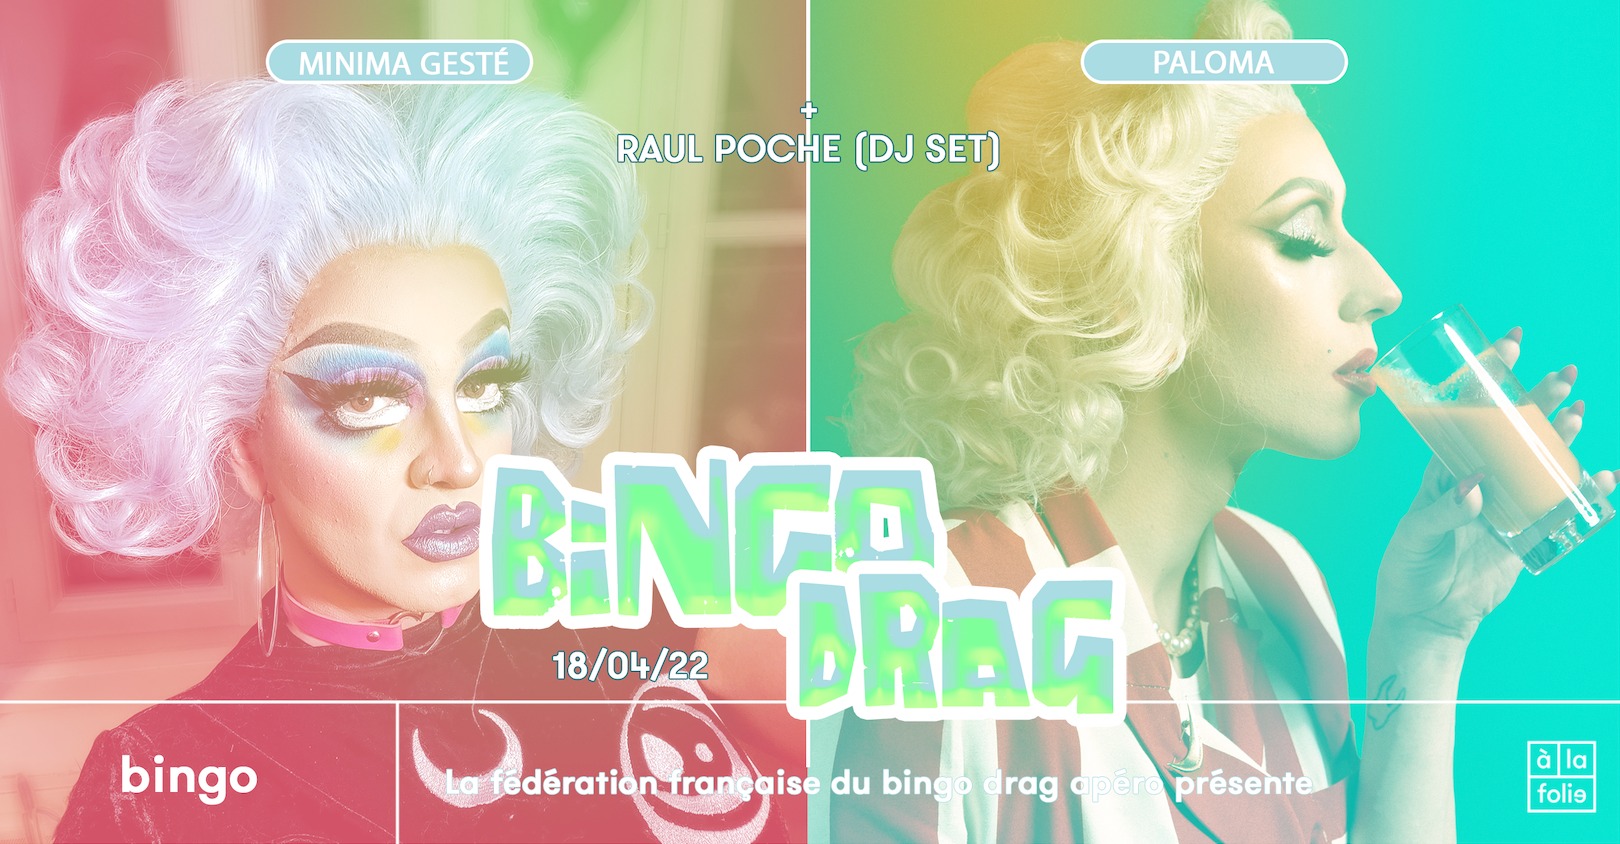 Le Bingo Drag (jour férié) · Minima Gesté & Paloma + Raul Poche